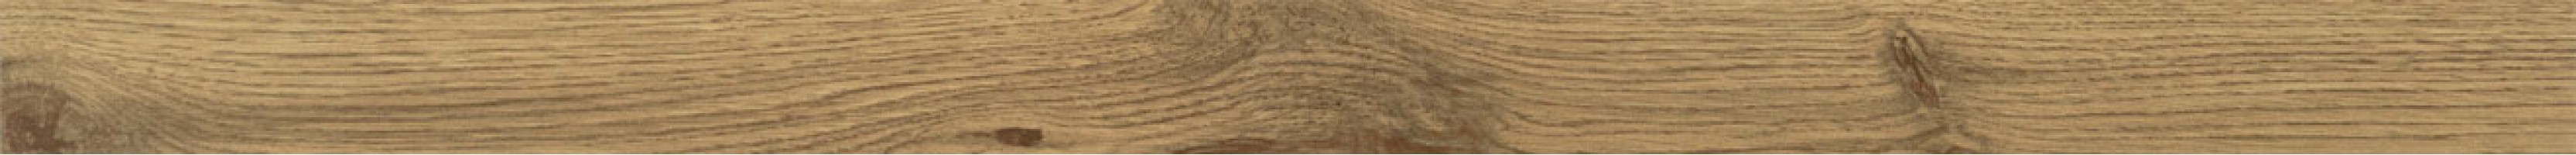 Бордюр Balance wood 89.8x5.4 Tubadzin